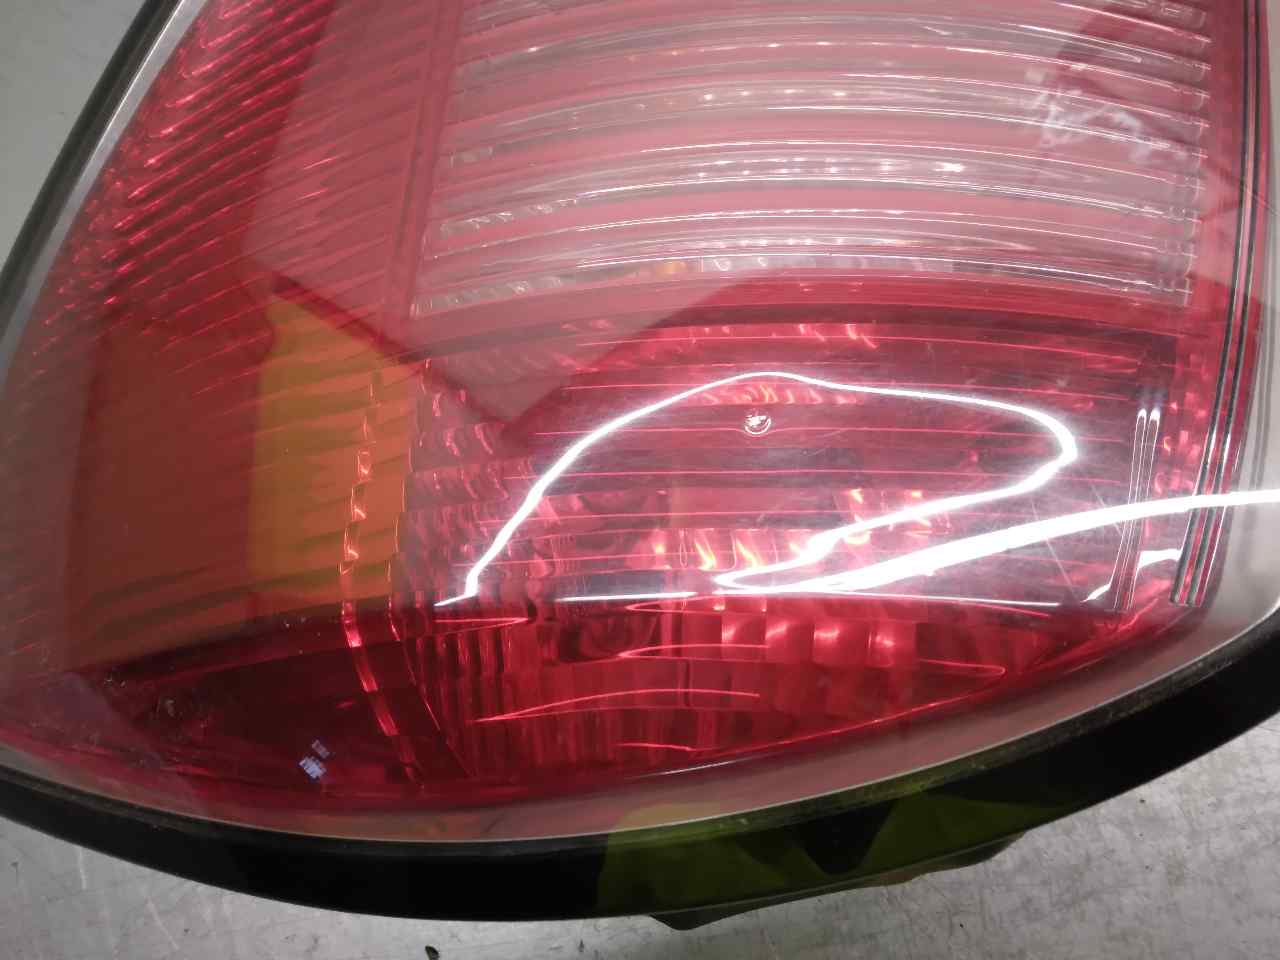 OPEL Astra J (2009-2020) Rear Right Taillight Lamp 24451840, 5PUERTAS 19875124